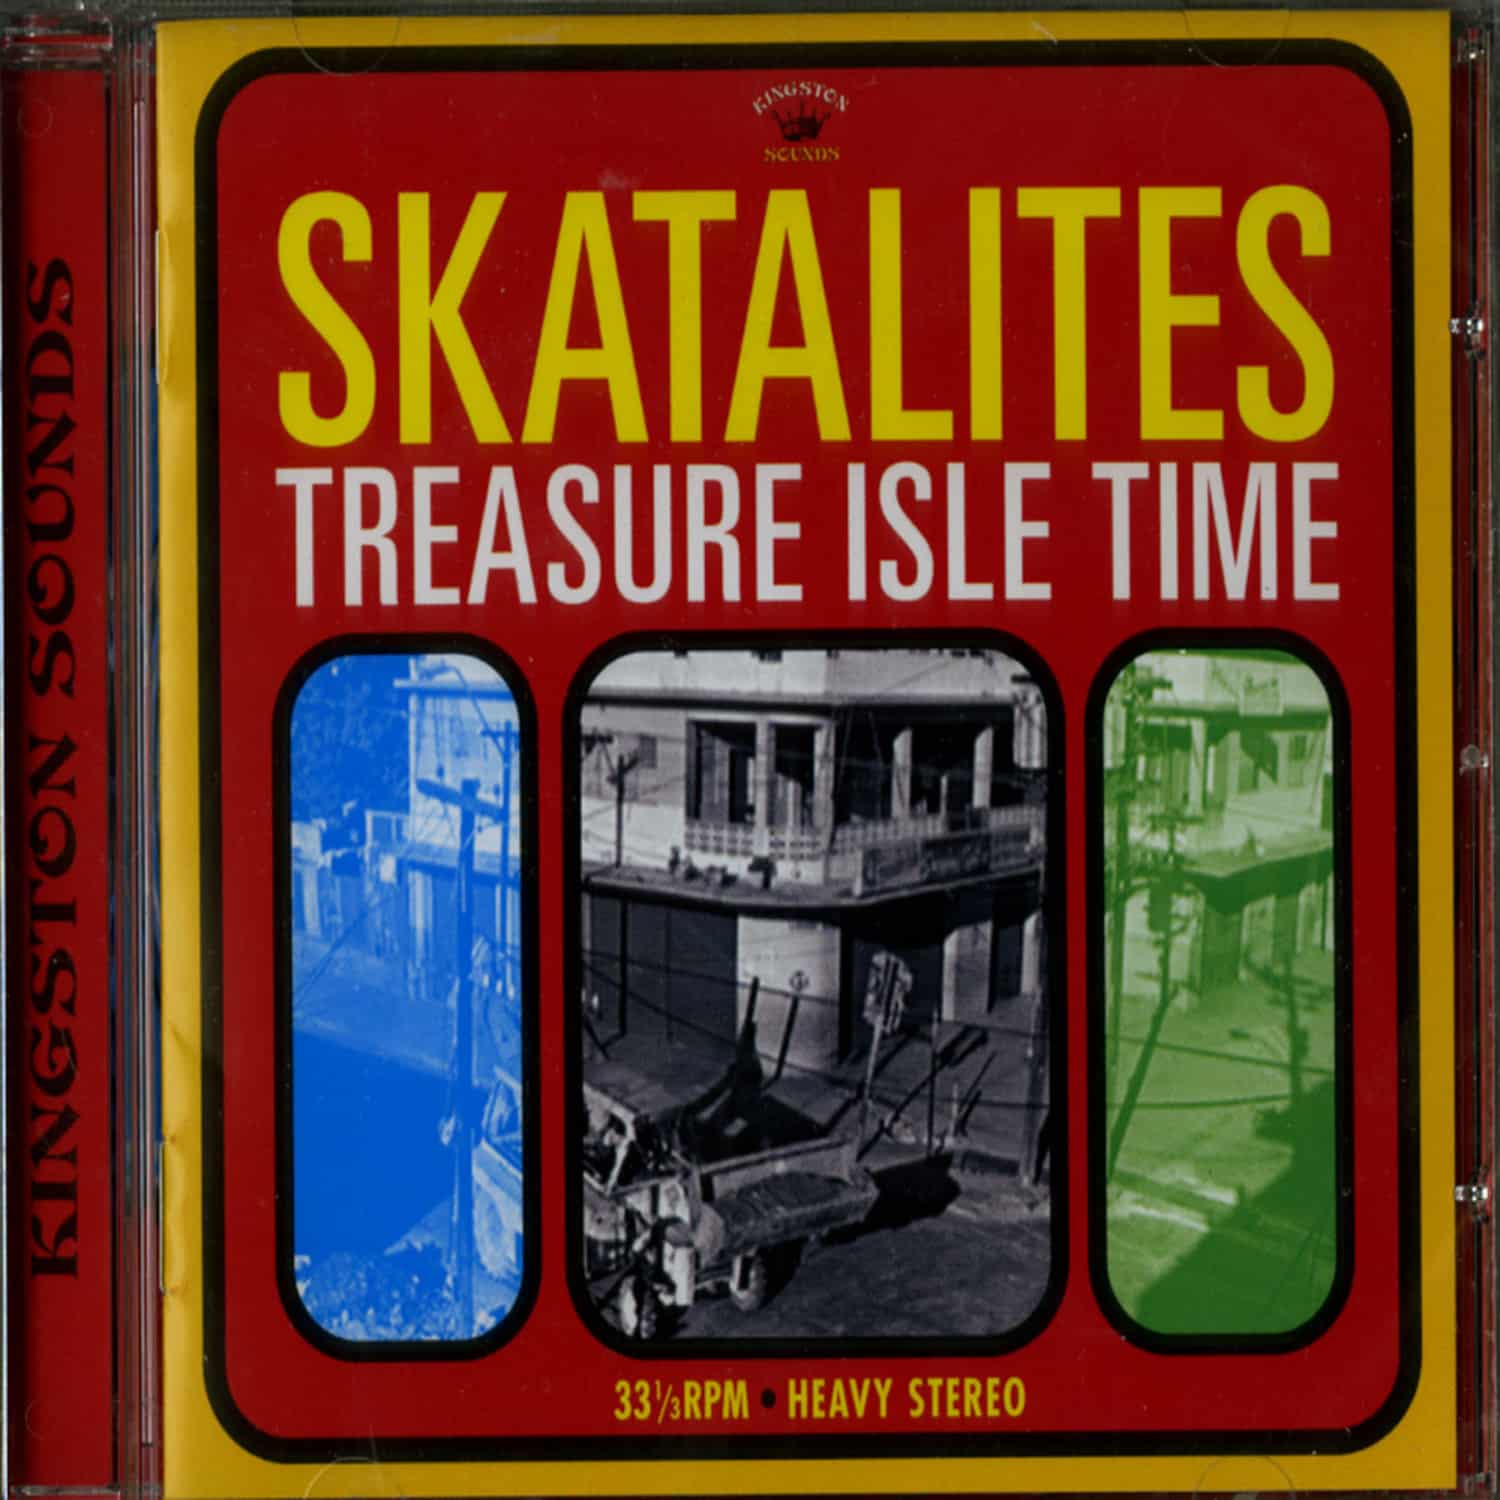 Skatalites - TREASURE ISLE TIME 